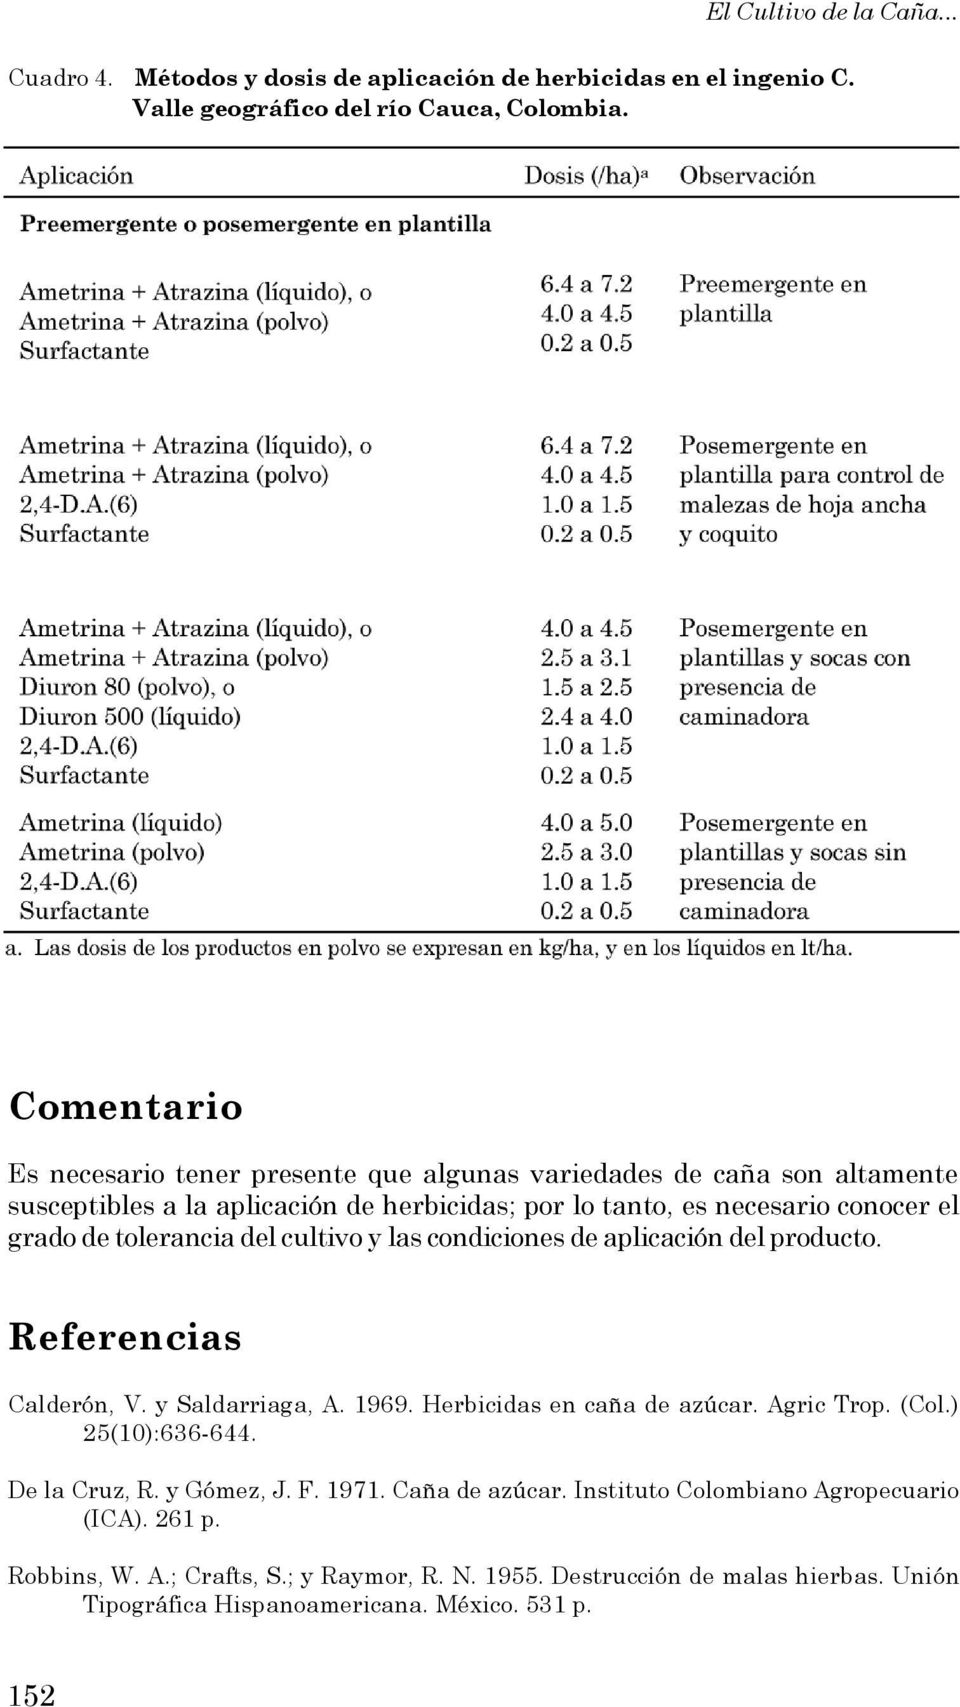 tolerancia del cultivo y las condiciones de aplicación del producto. Referencias Calderón, V. y Saldarriaga, A. 1969. Herbicidas en caña de azúcar. Agric Trop. (Col.) 25(10):636-644.